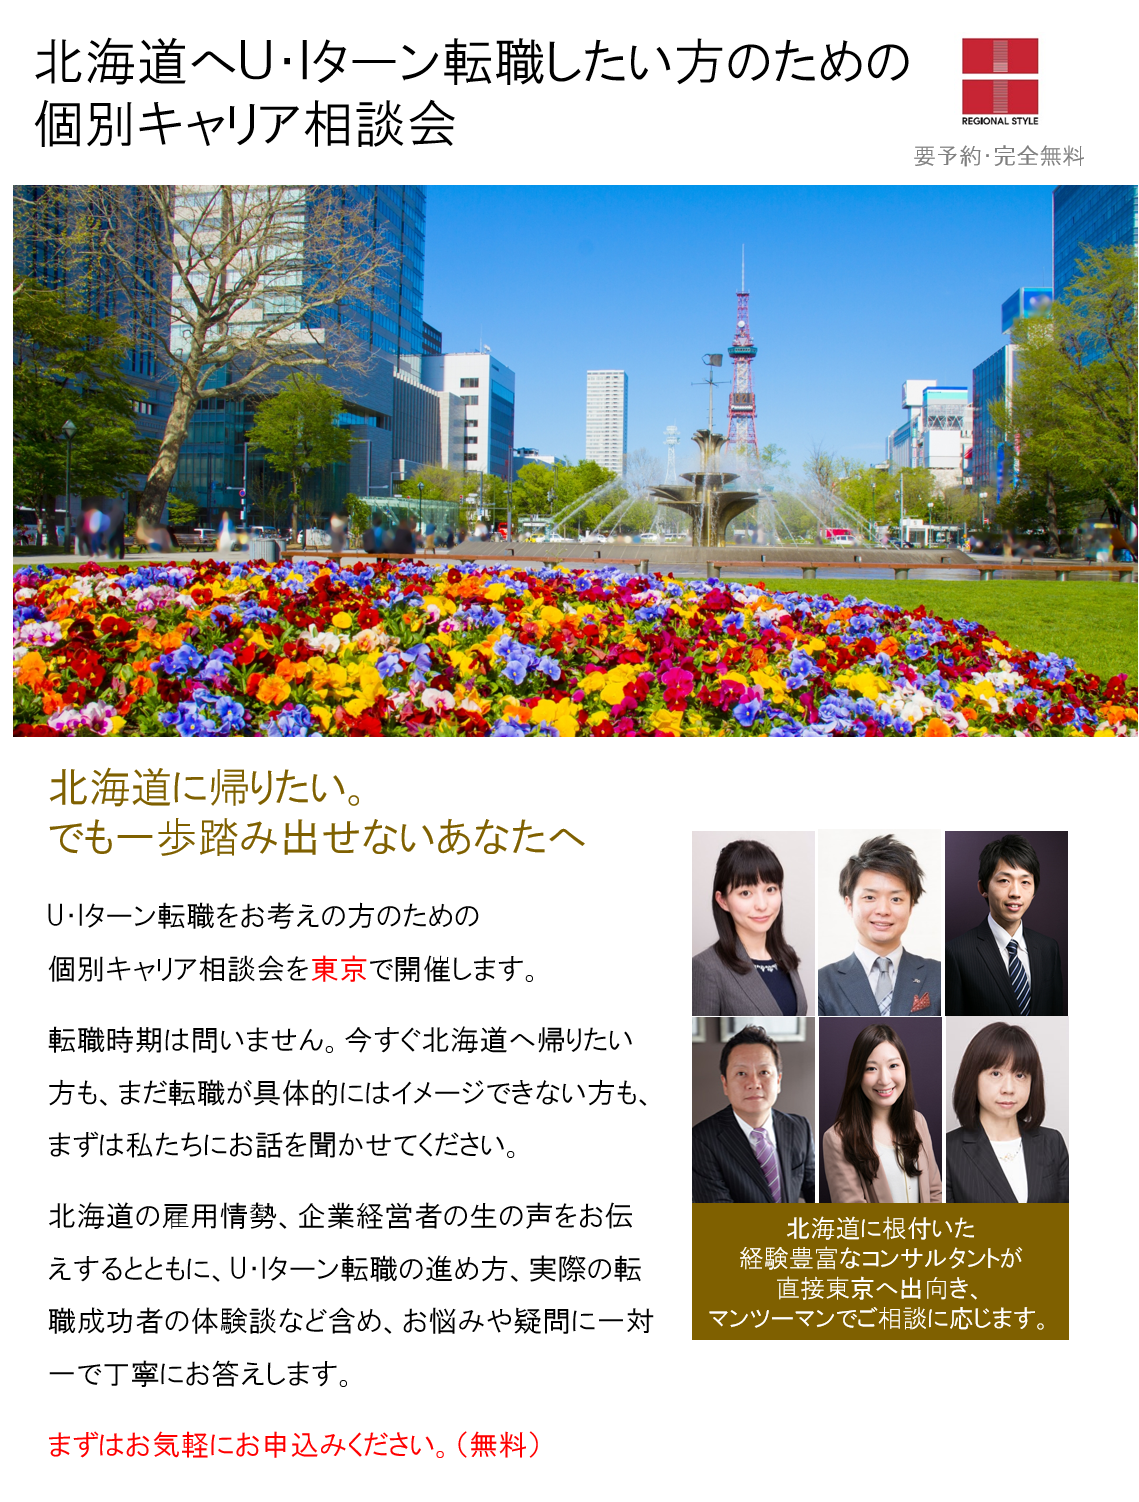 http://www.regional.co.jp/career_mt/062223sapporo.png